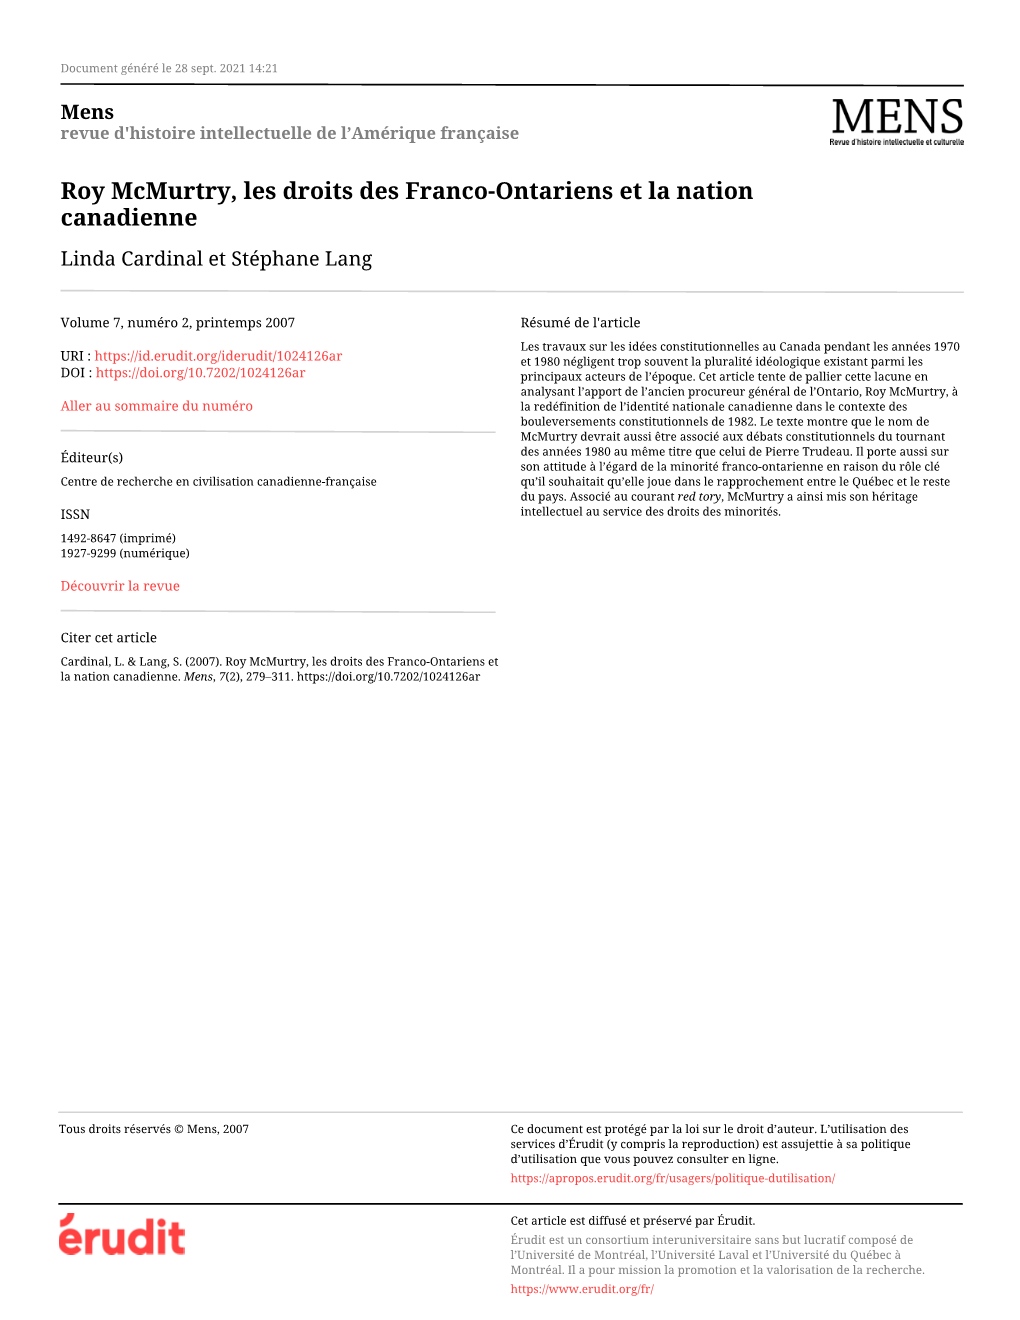 Roy Mcmurtry, Les Droits Des Franco-Ontariens Et La Nation Canadienne Linda Cardinal Et Stéphane Lang